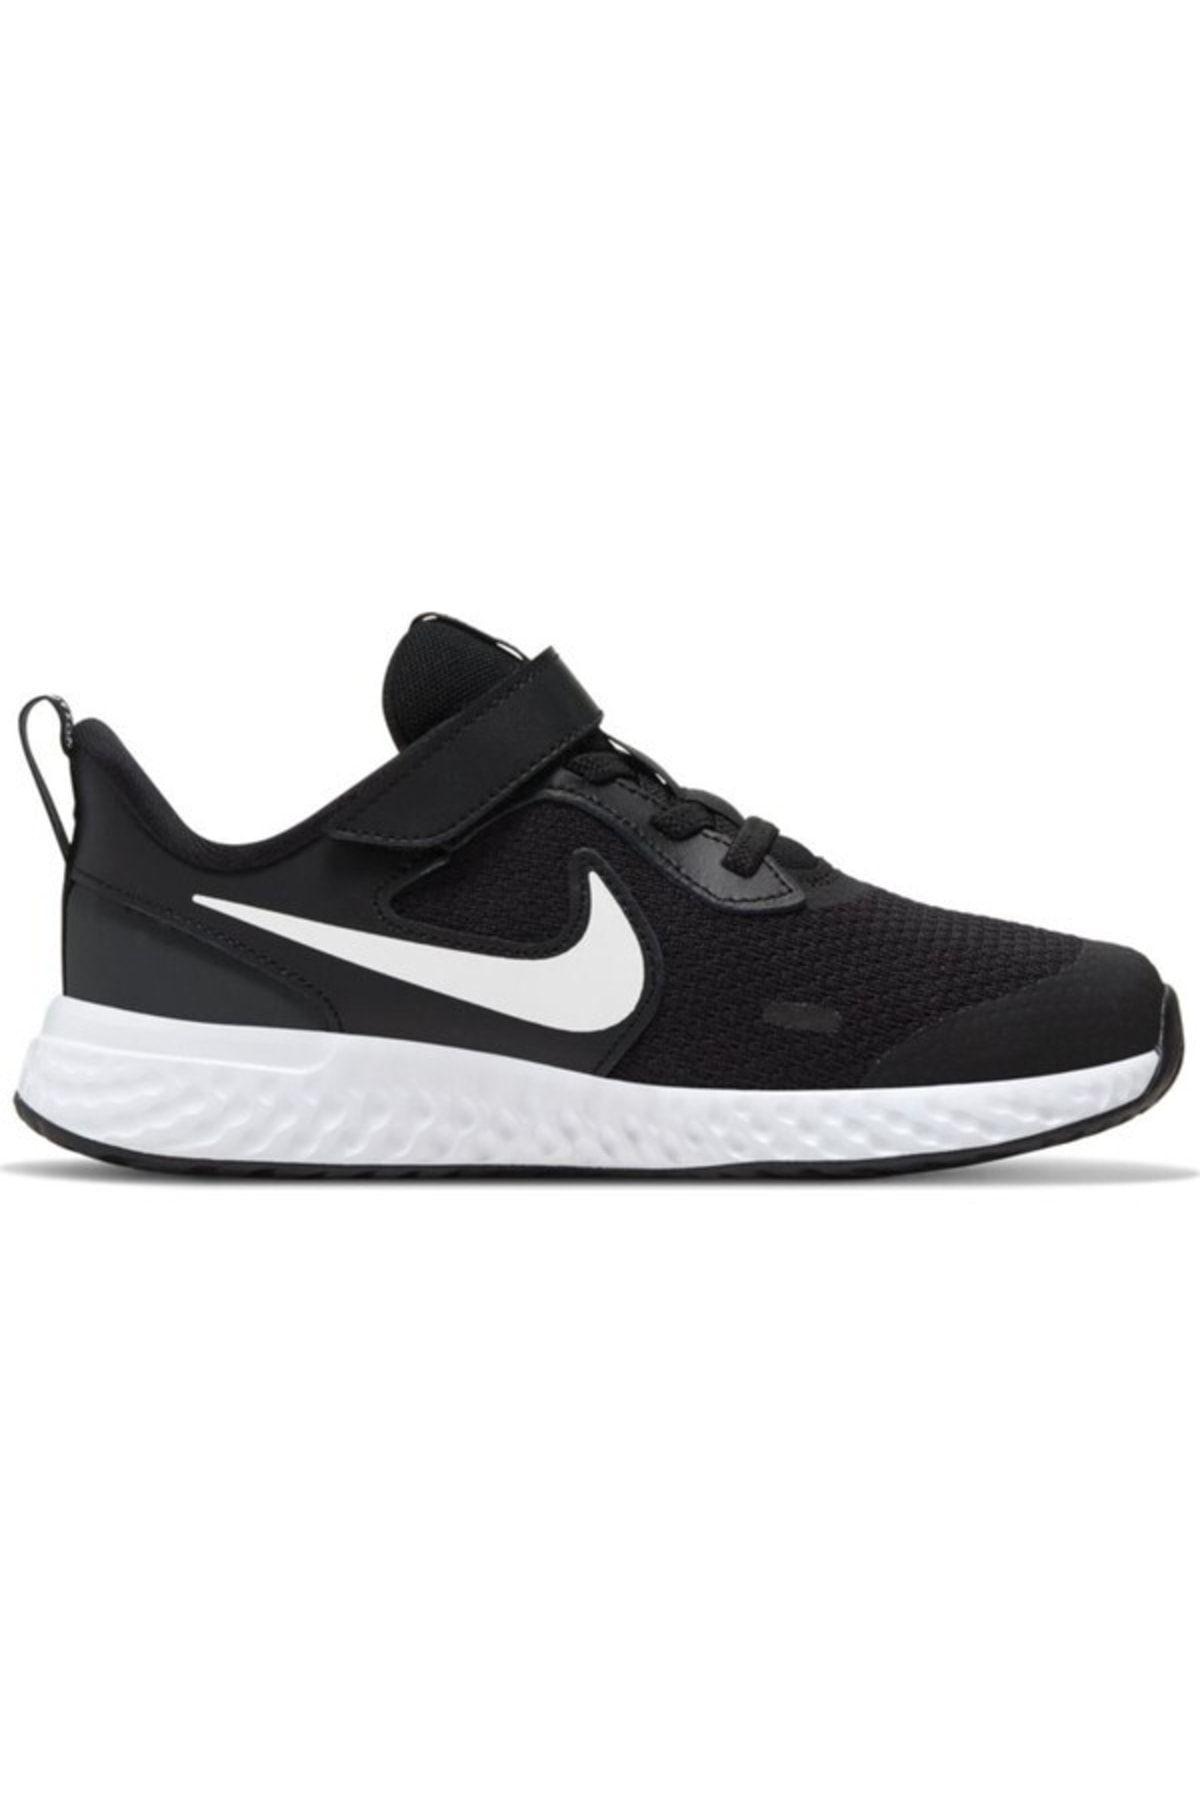 Nike Unisex Çocuk Siyah Yürüyüş Koşu Ayakkabı Bq5672-003 Revolutıon 5 psv